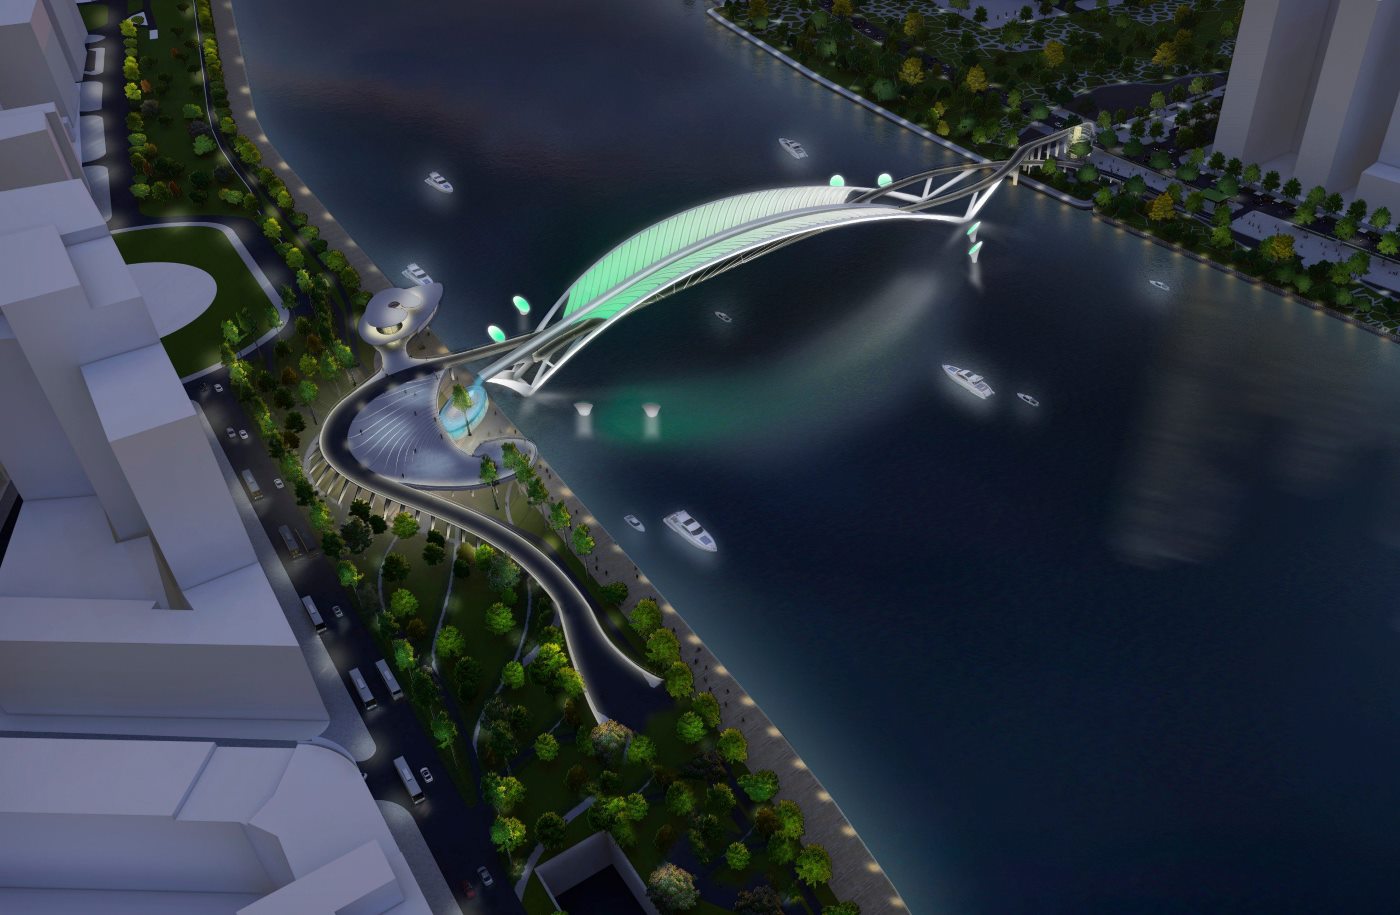 Bên đêm cầu sẽ được chiếu sáng nghệ thuật, tạo điểm nhấn trên sông Sài Gòn.